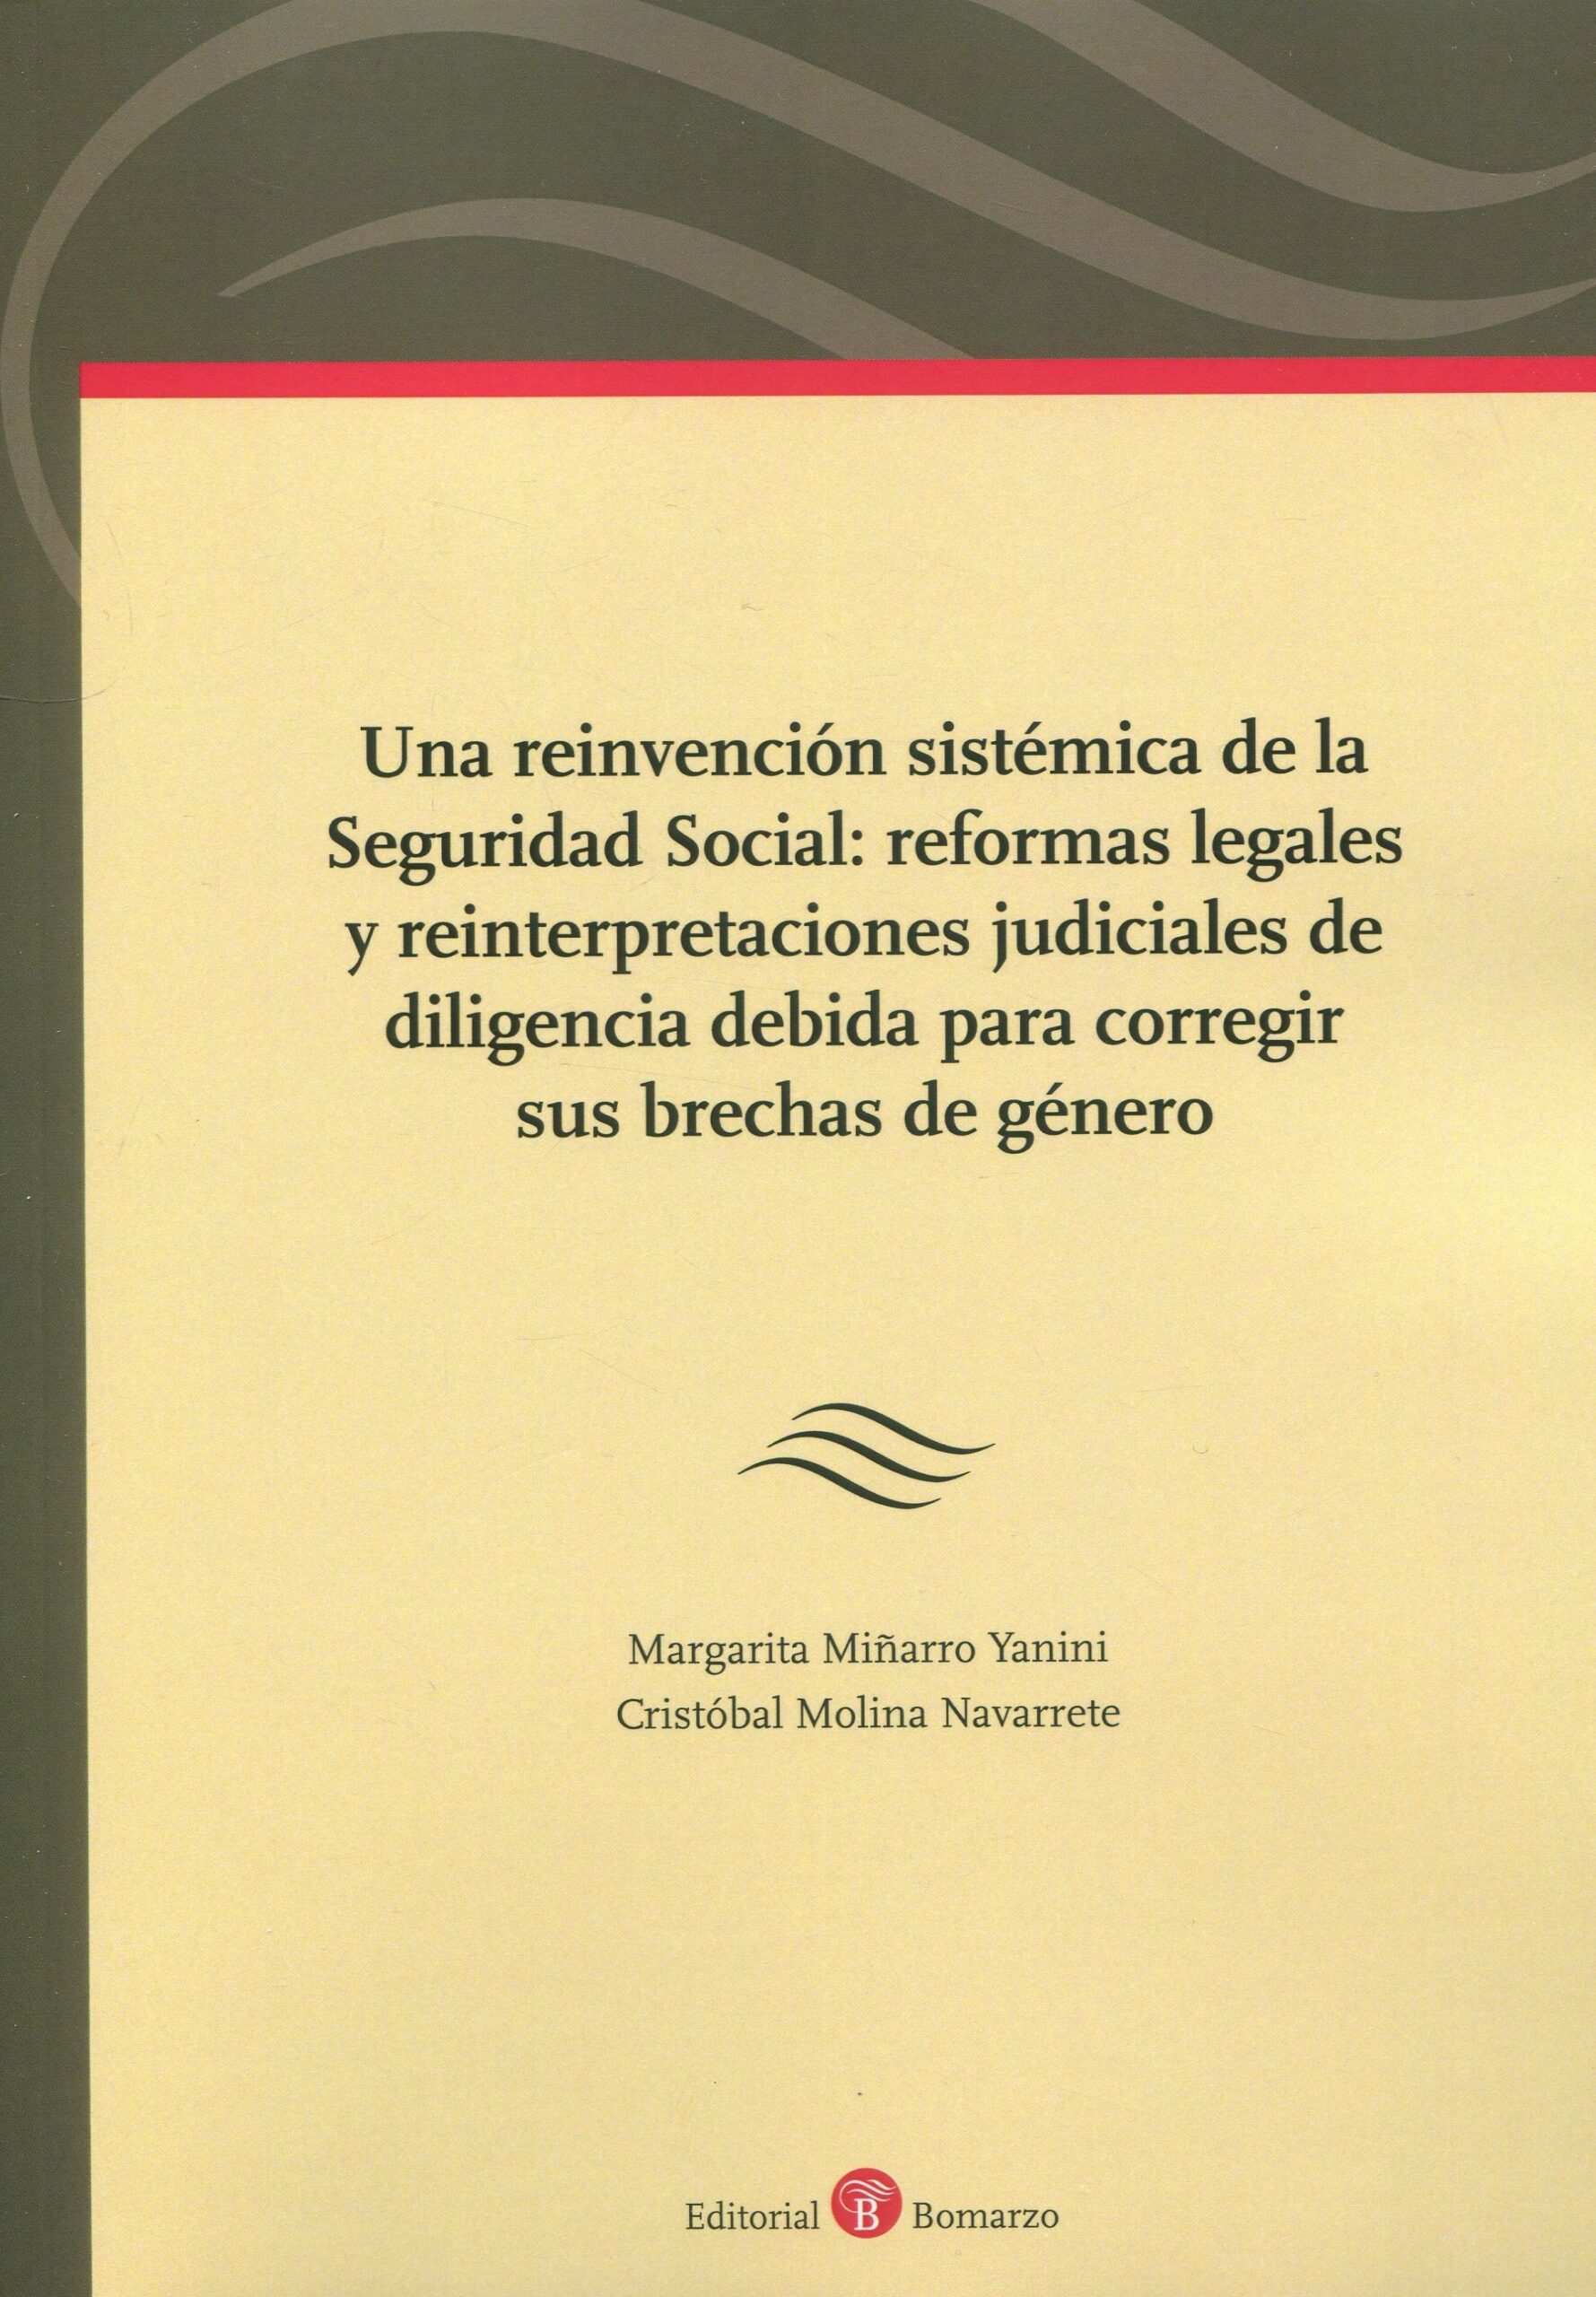 Imagen de portada del libro Una reinvención sistémica de la Seguridad Social